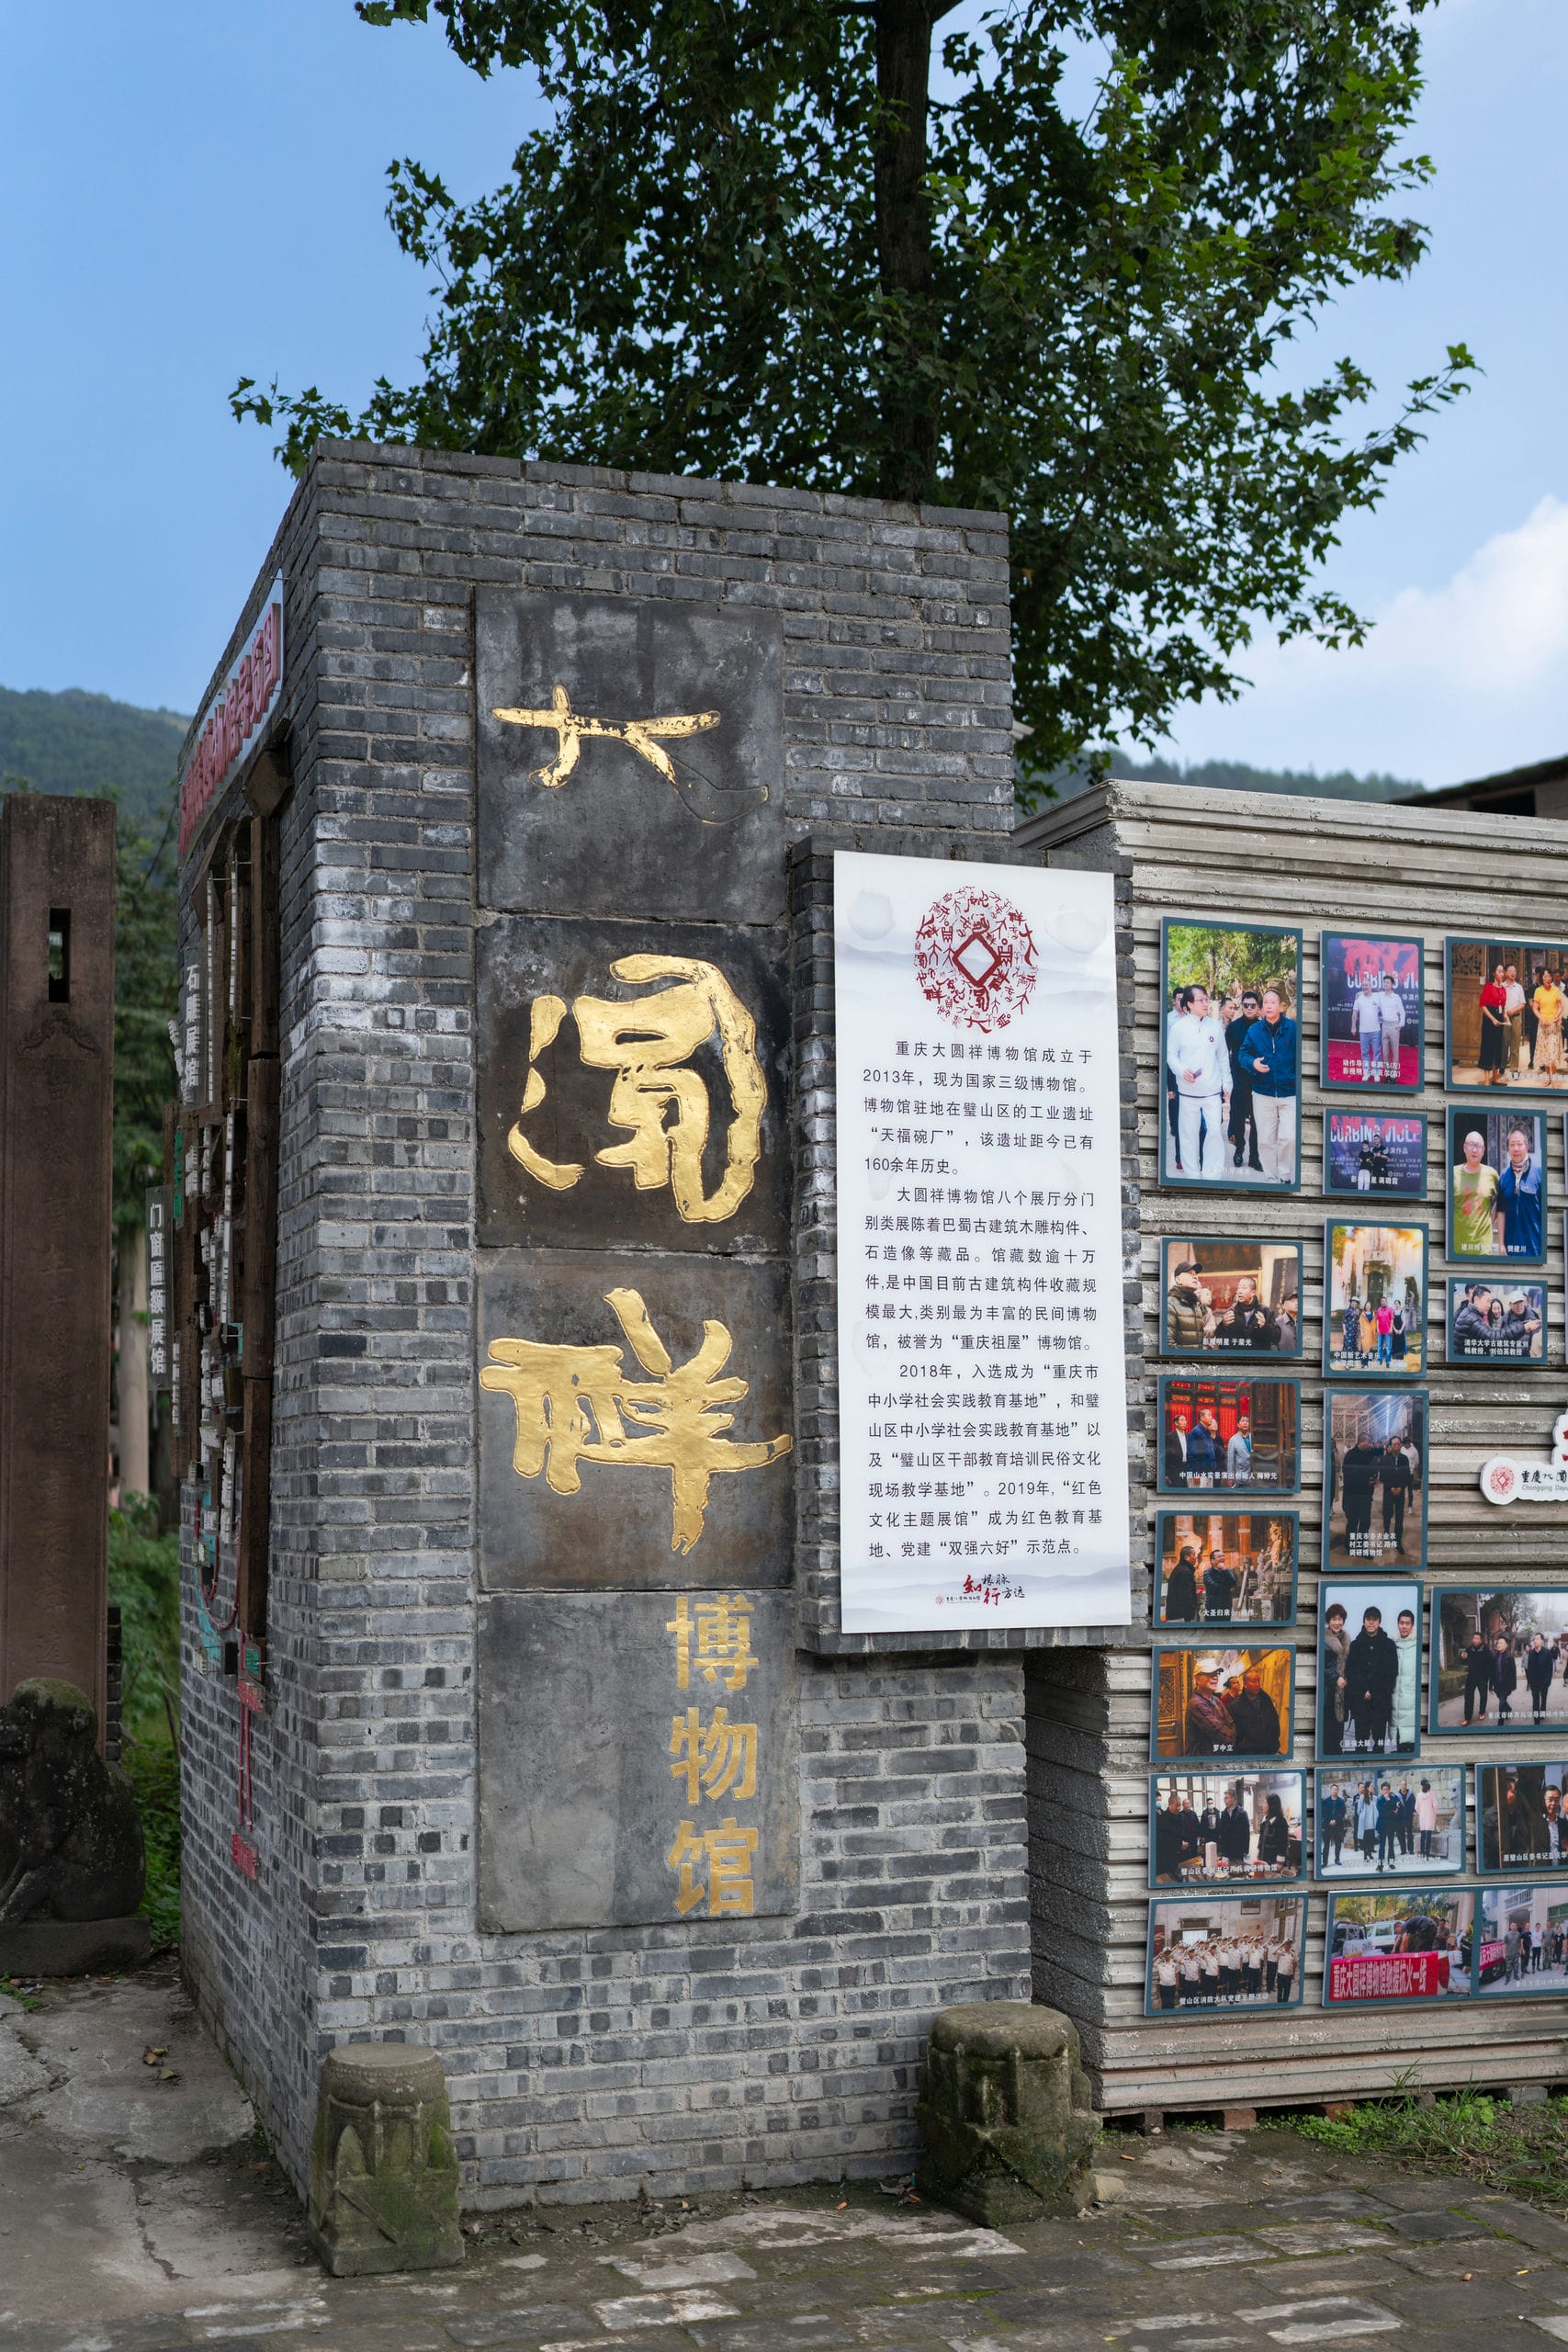 打卡被称为“重庆祖屋”的大圆祥博物馆